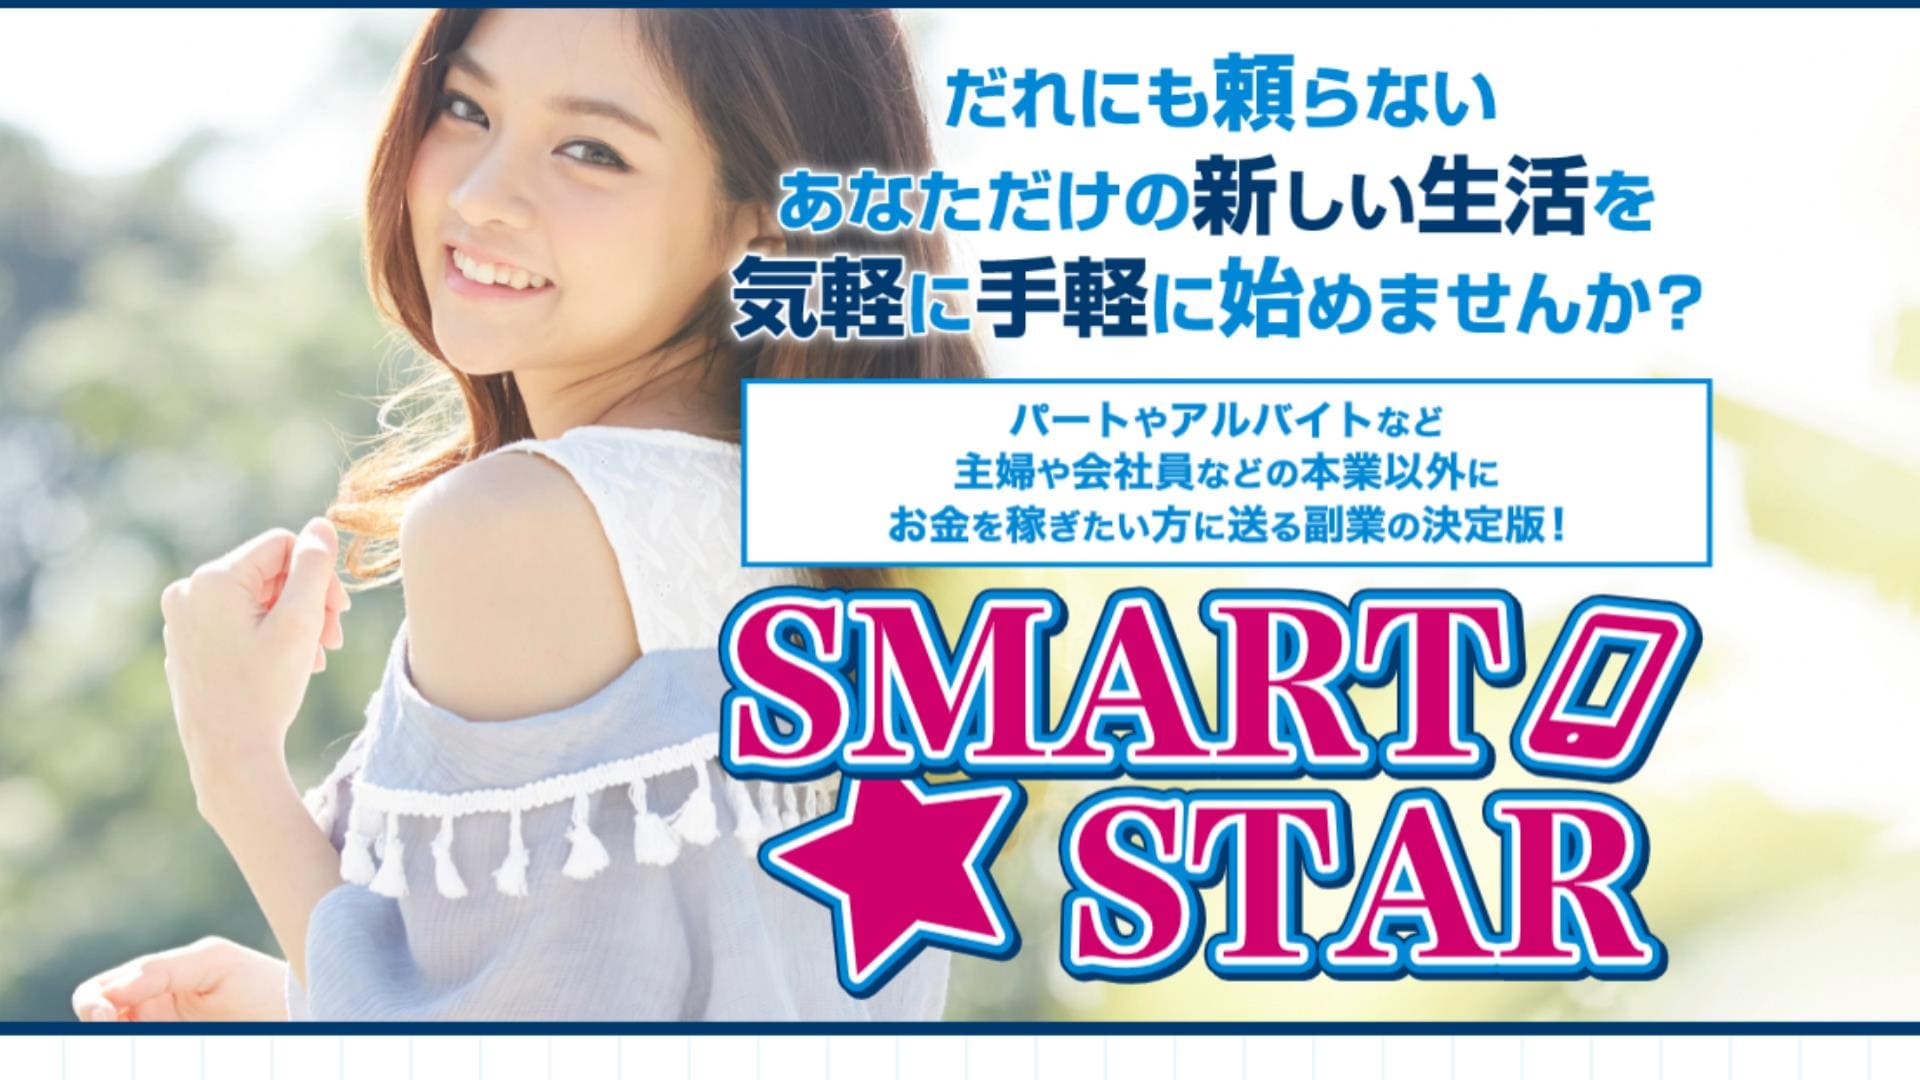 SMART STAR（スマートスター）は副業詐欺？月収75万円以上を稼げるのか徹底リサーチ！